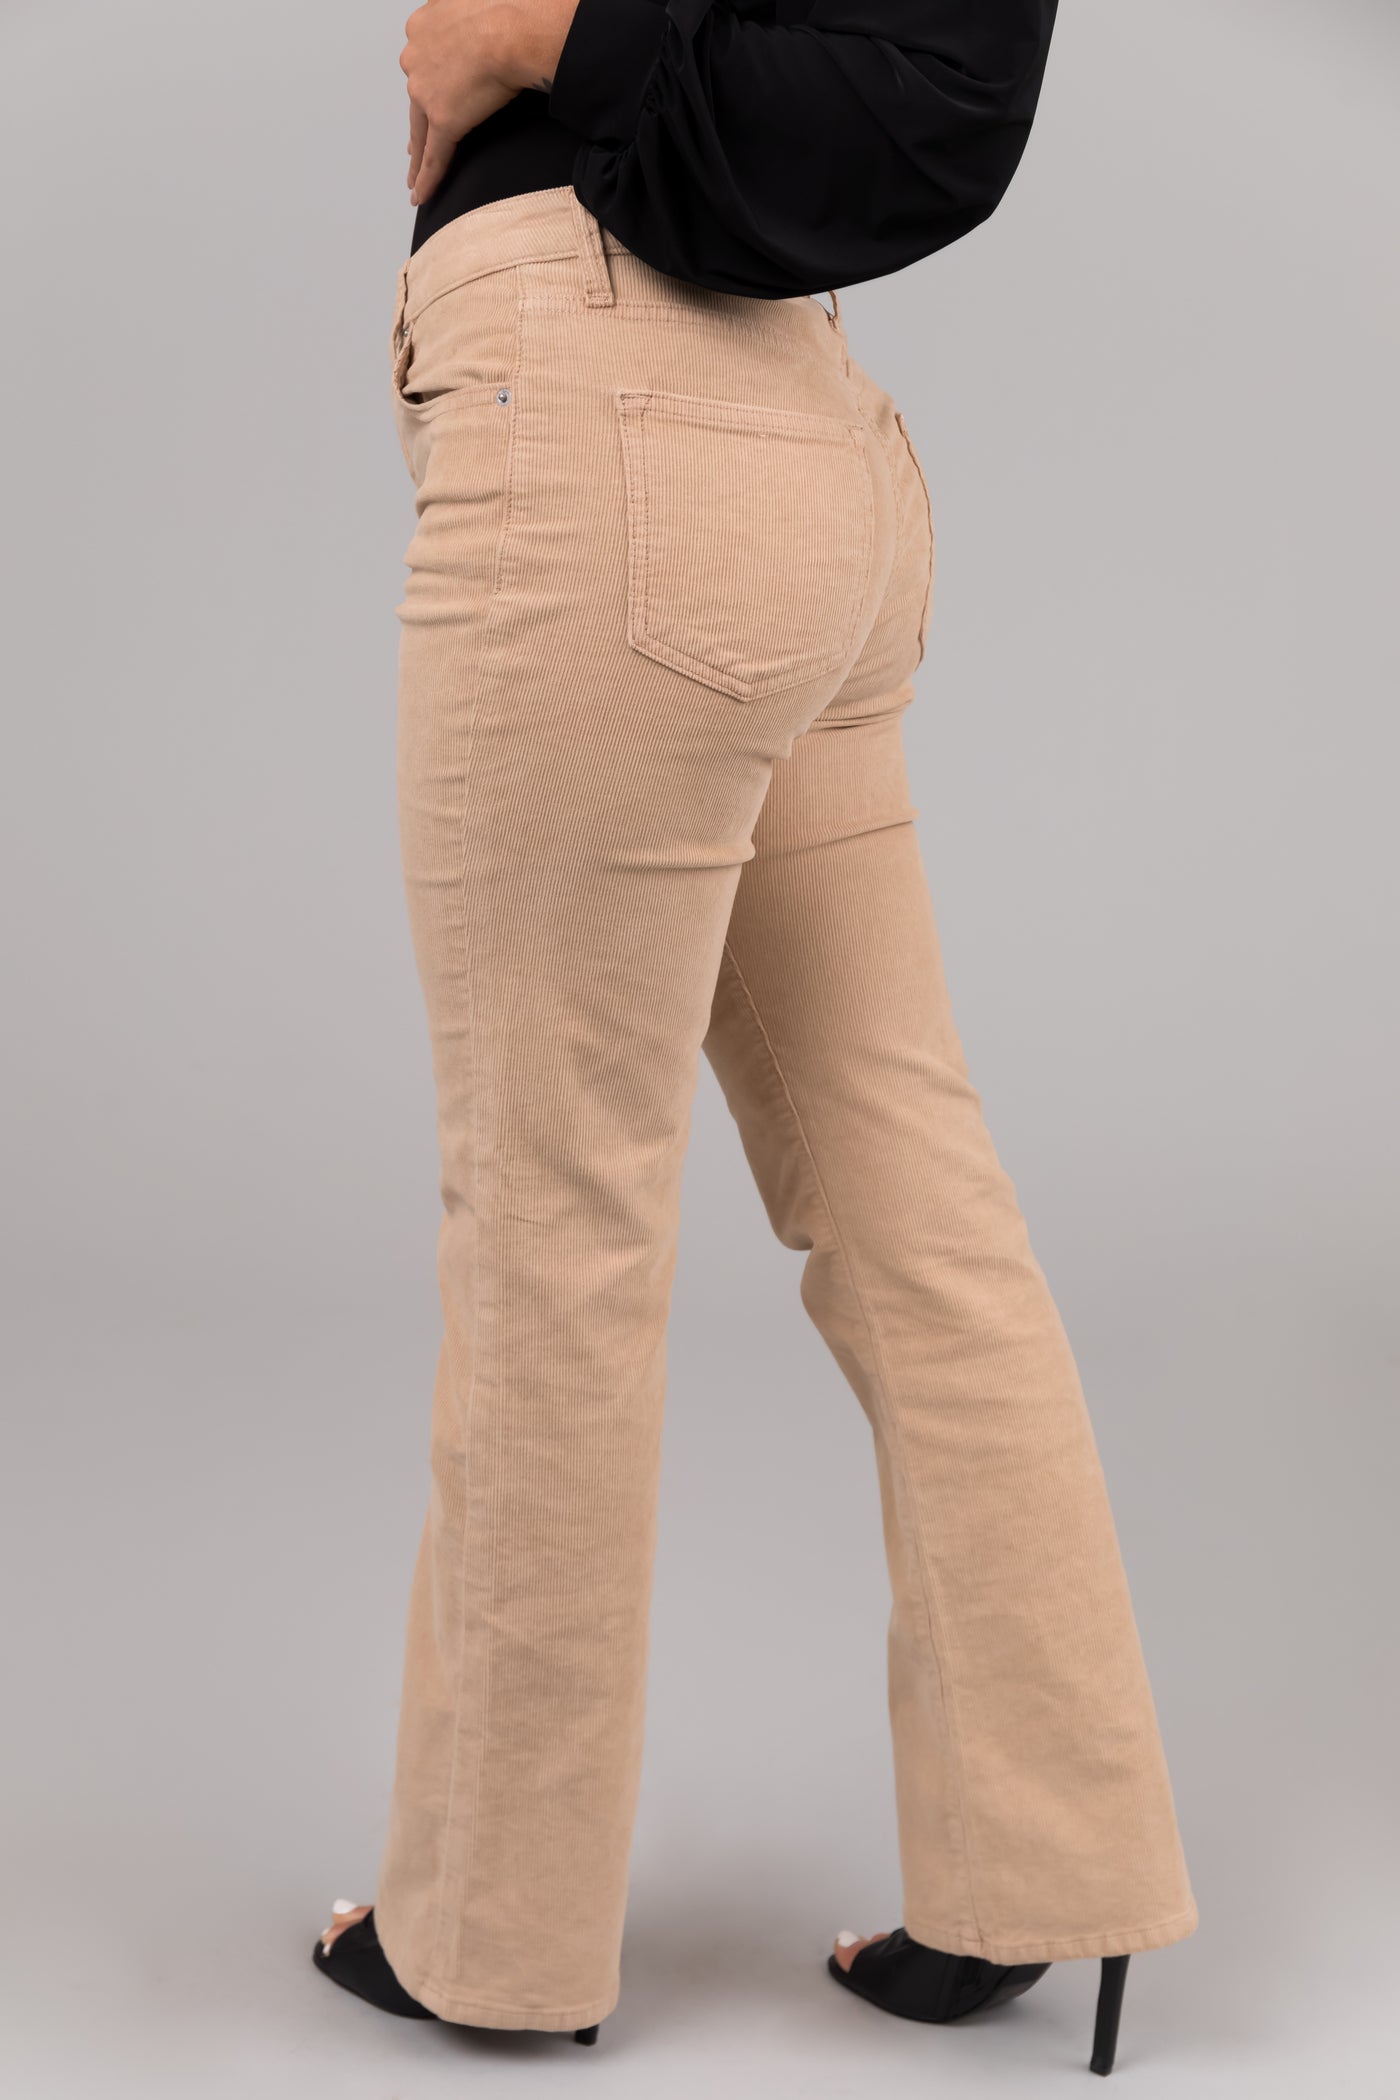 Sneak Peak Beige Corduroy Slim Bootcut Jeans